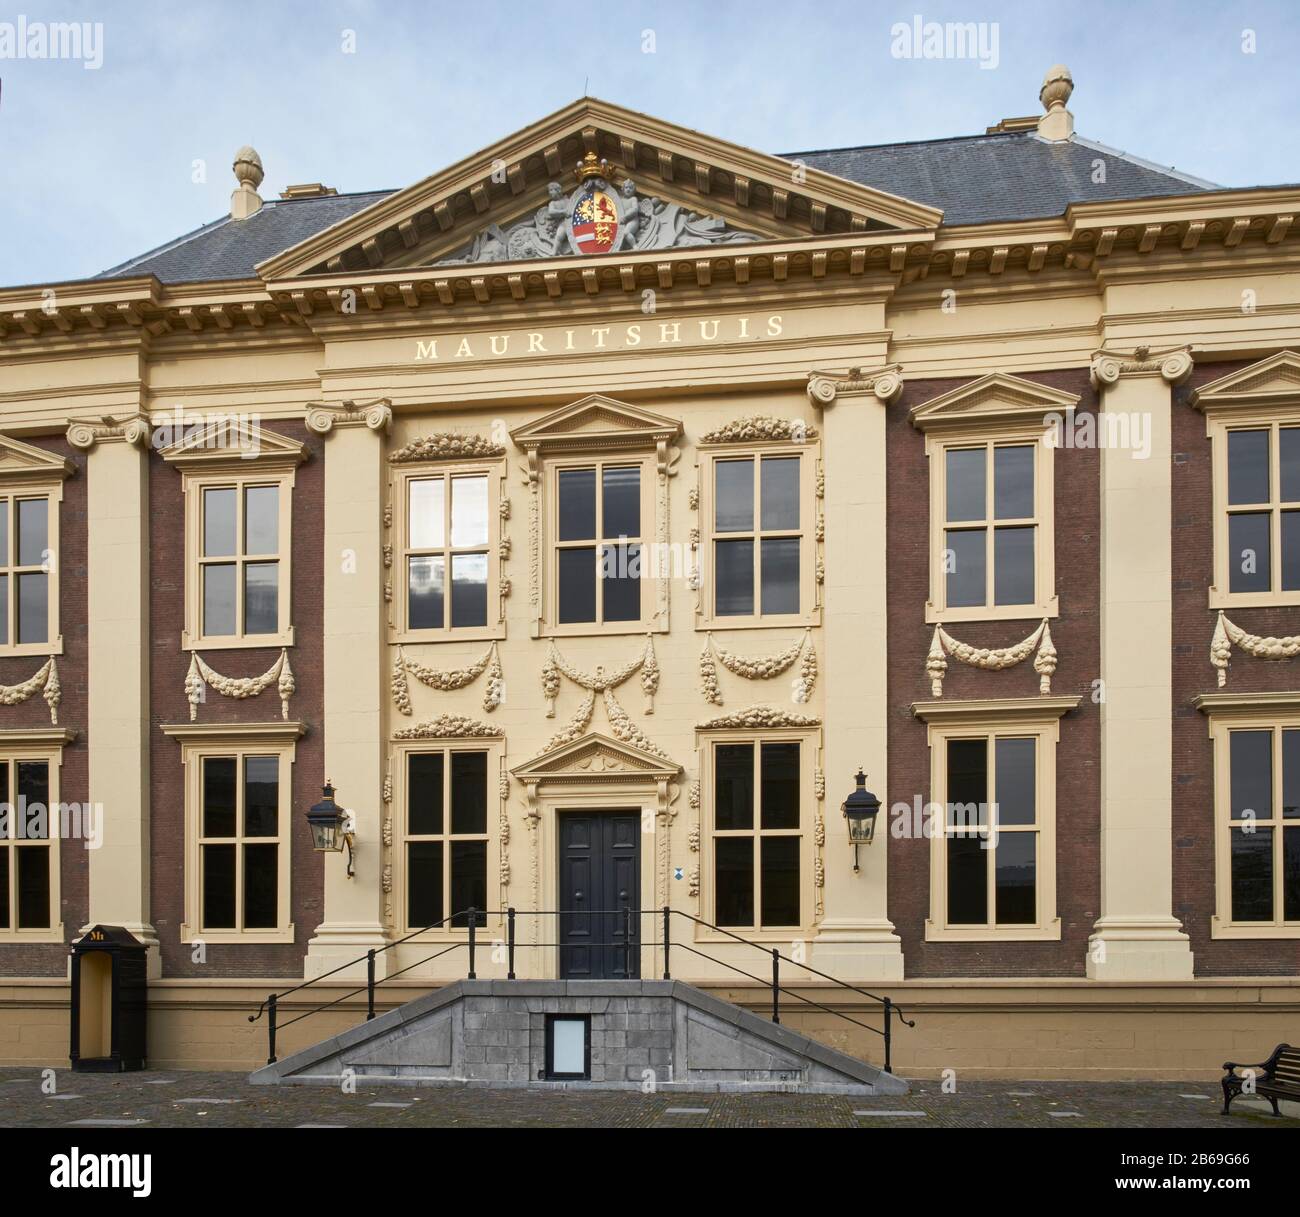 Mauritshuis, La Haya (Den Haag) , Holanda. Construido entre 1636 y 1641 para John Maurice, Príncipe de Nassau-Siegen. El edificio clasicista holandés fue Foto de stock